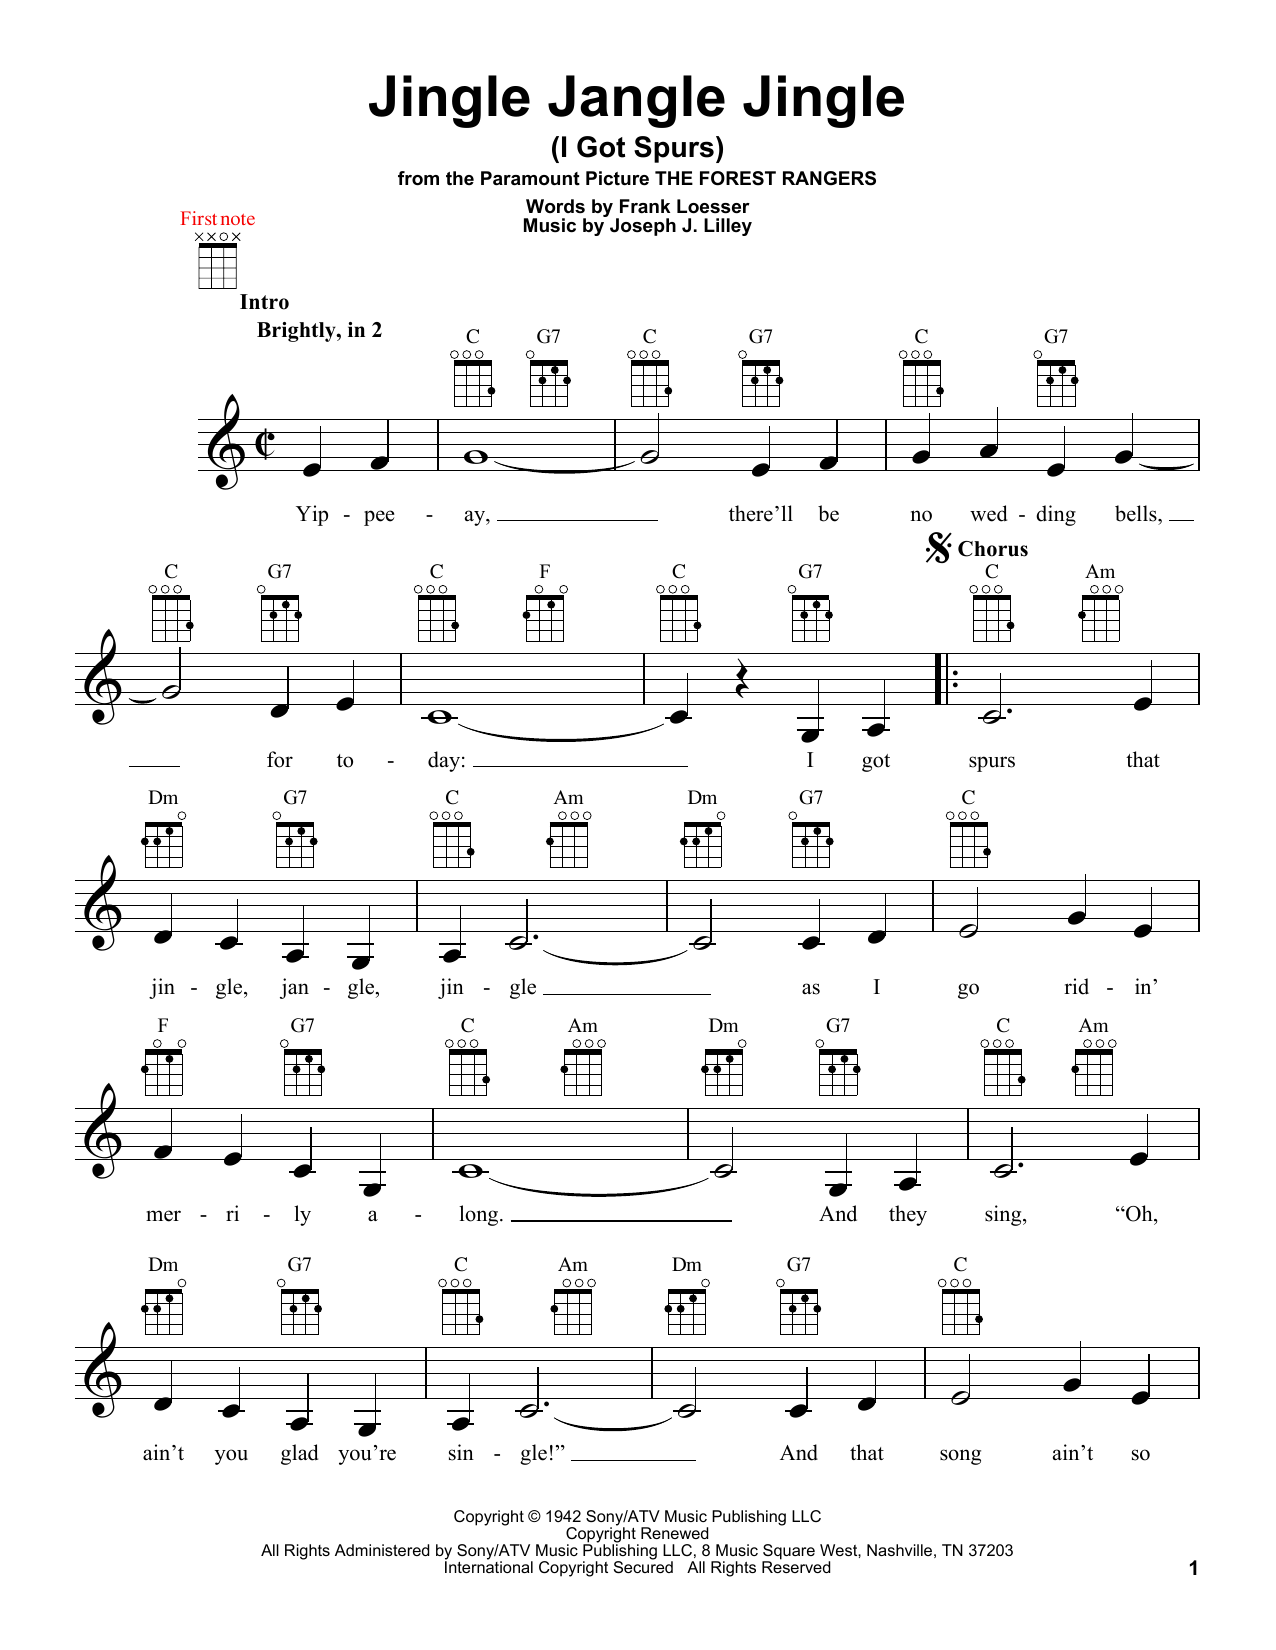 Frank Loesser Jingle Jangle Jingle (I Got Spurs) Sheet Music Notes & Chords for Banjo - Download or Print PDF